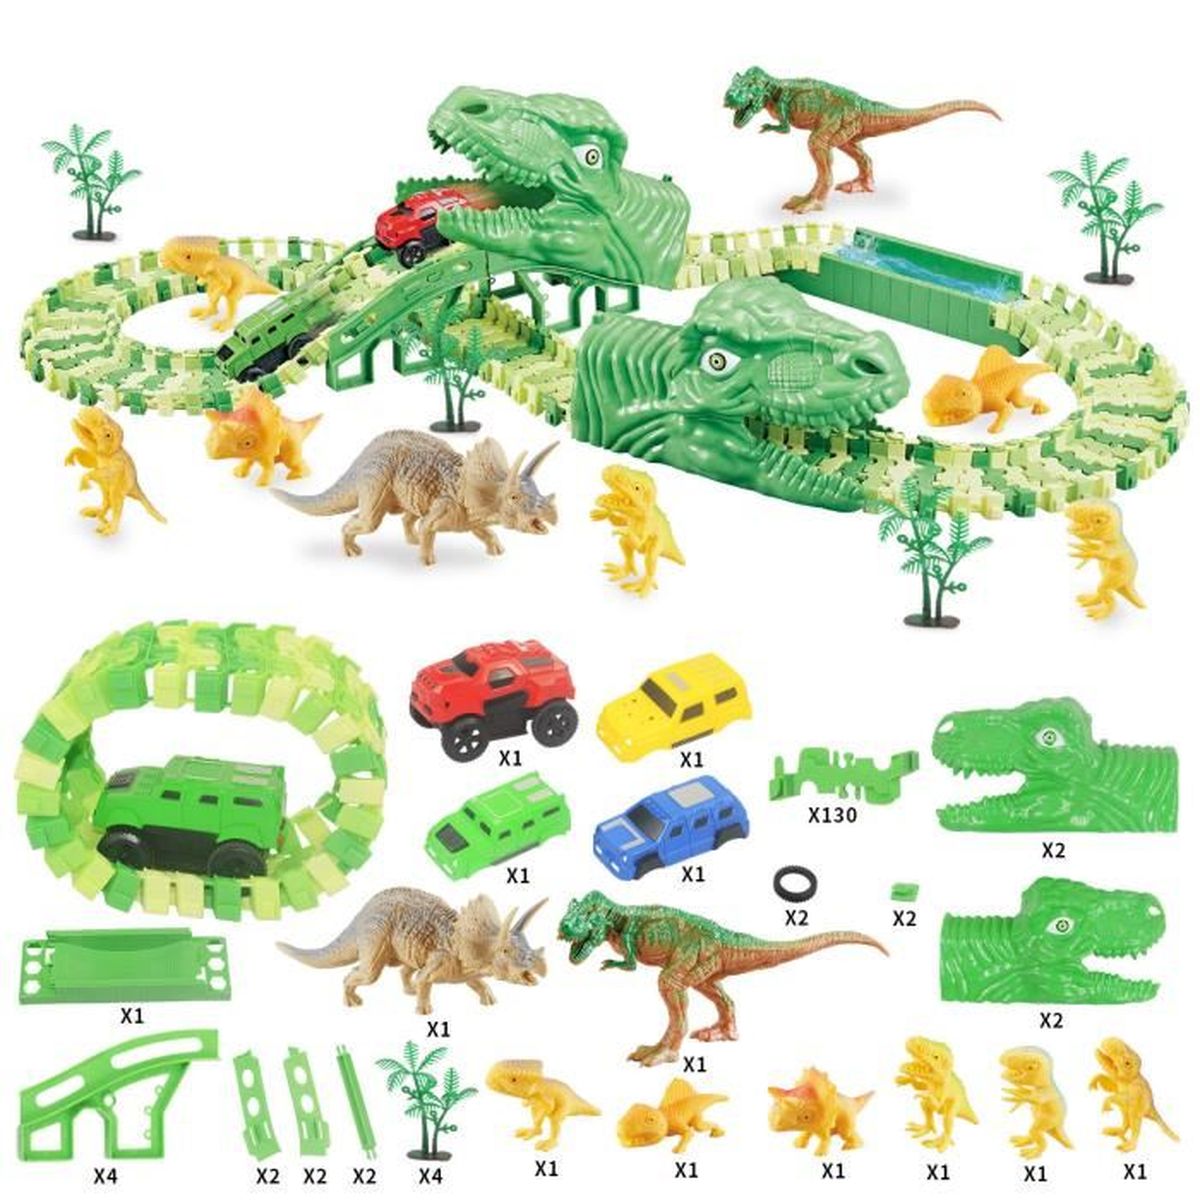 Dinausaures Enfant Jouet de Circuit Voiture 153 Pièces Dinosaures Jouet avec Circuit Cars Electrique Jeux Educatif Cadeau pour Enfants Garçon Fille 3 4 5 6 Ans 